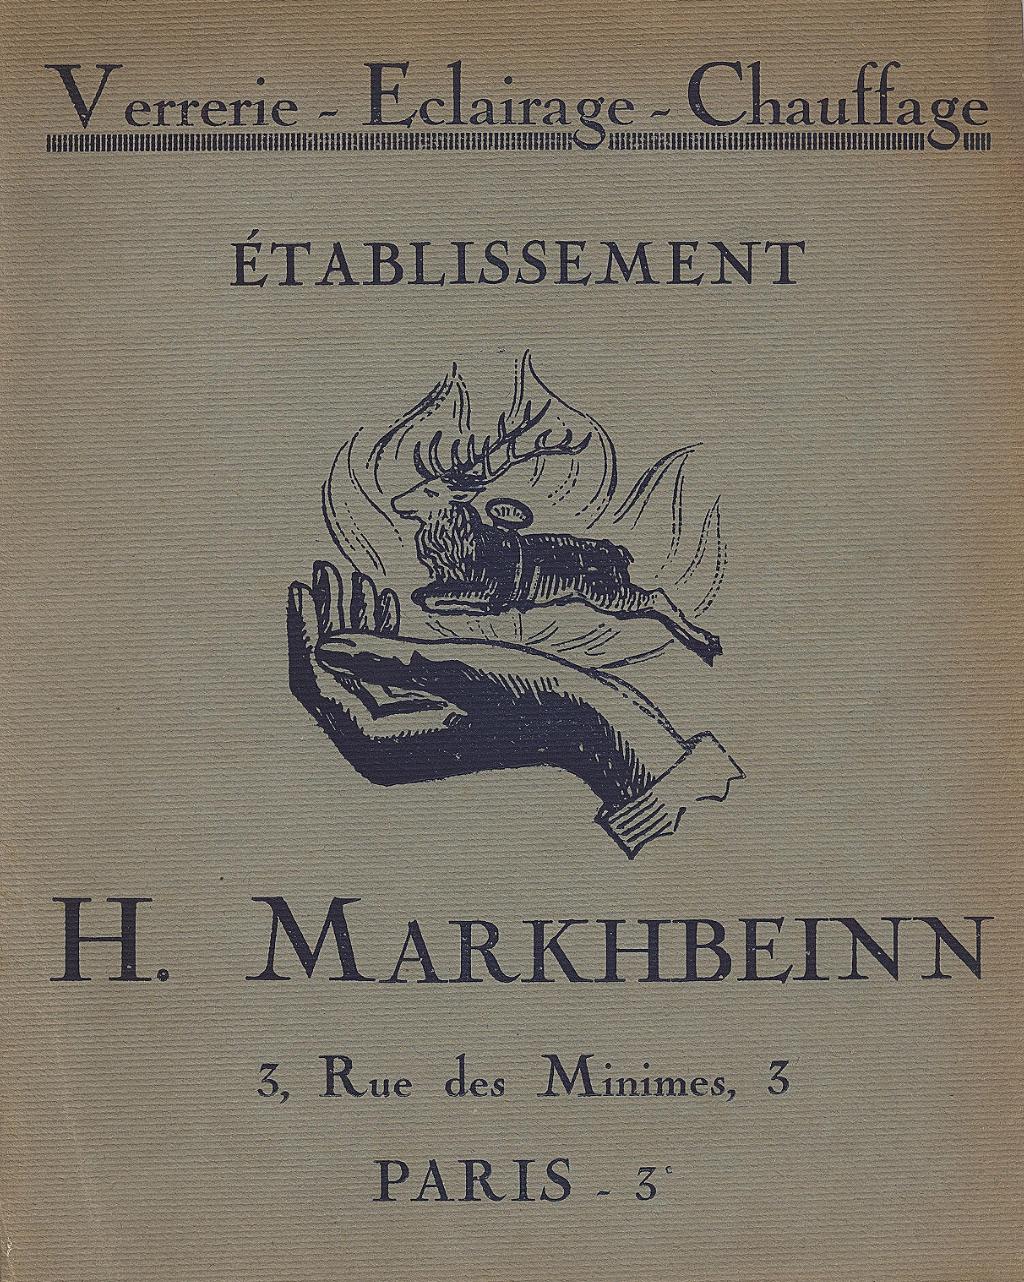 "Markhbeinn 1921 Beleuchtung"